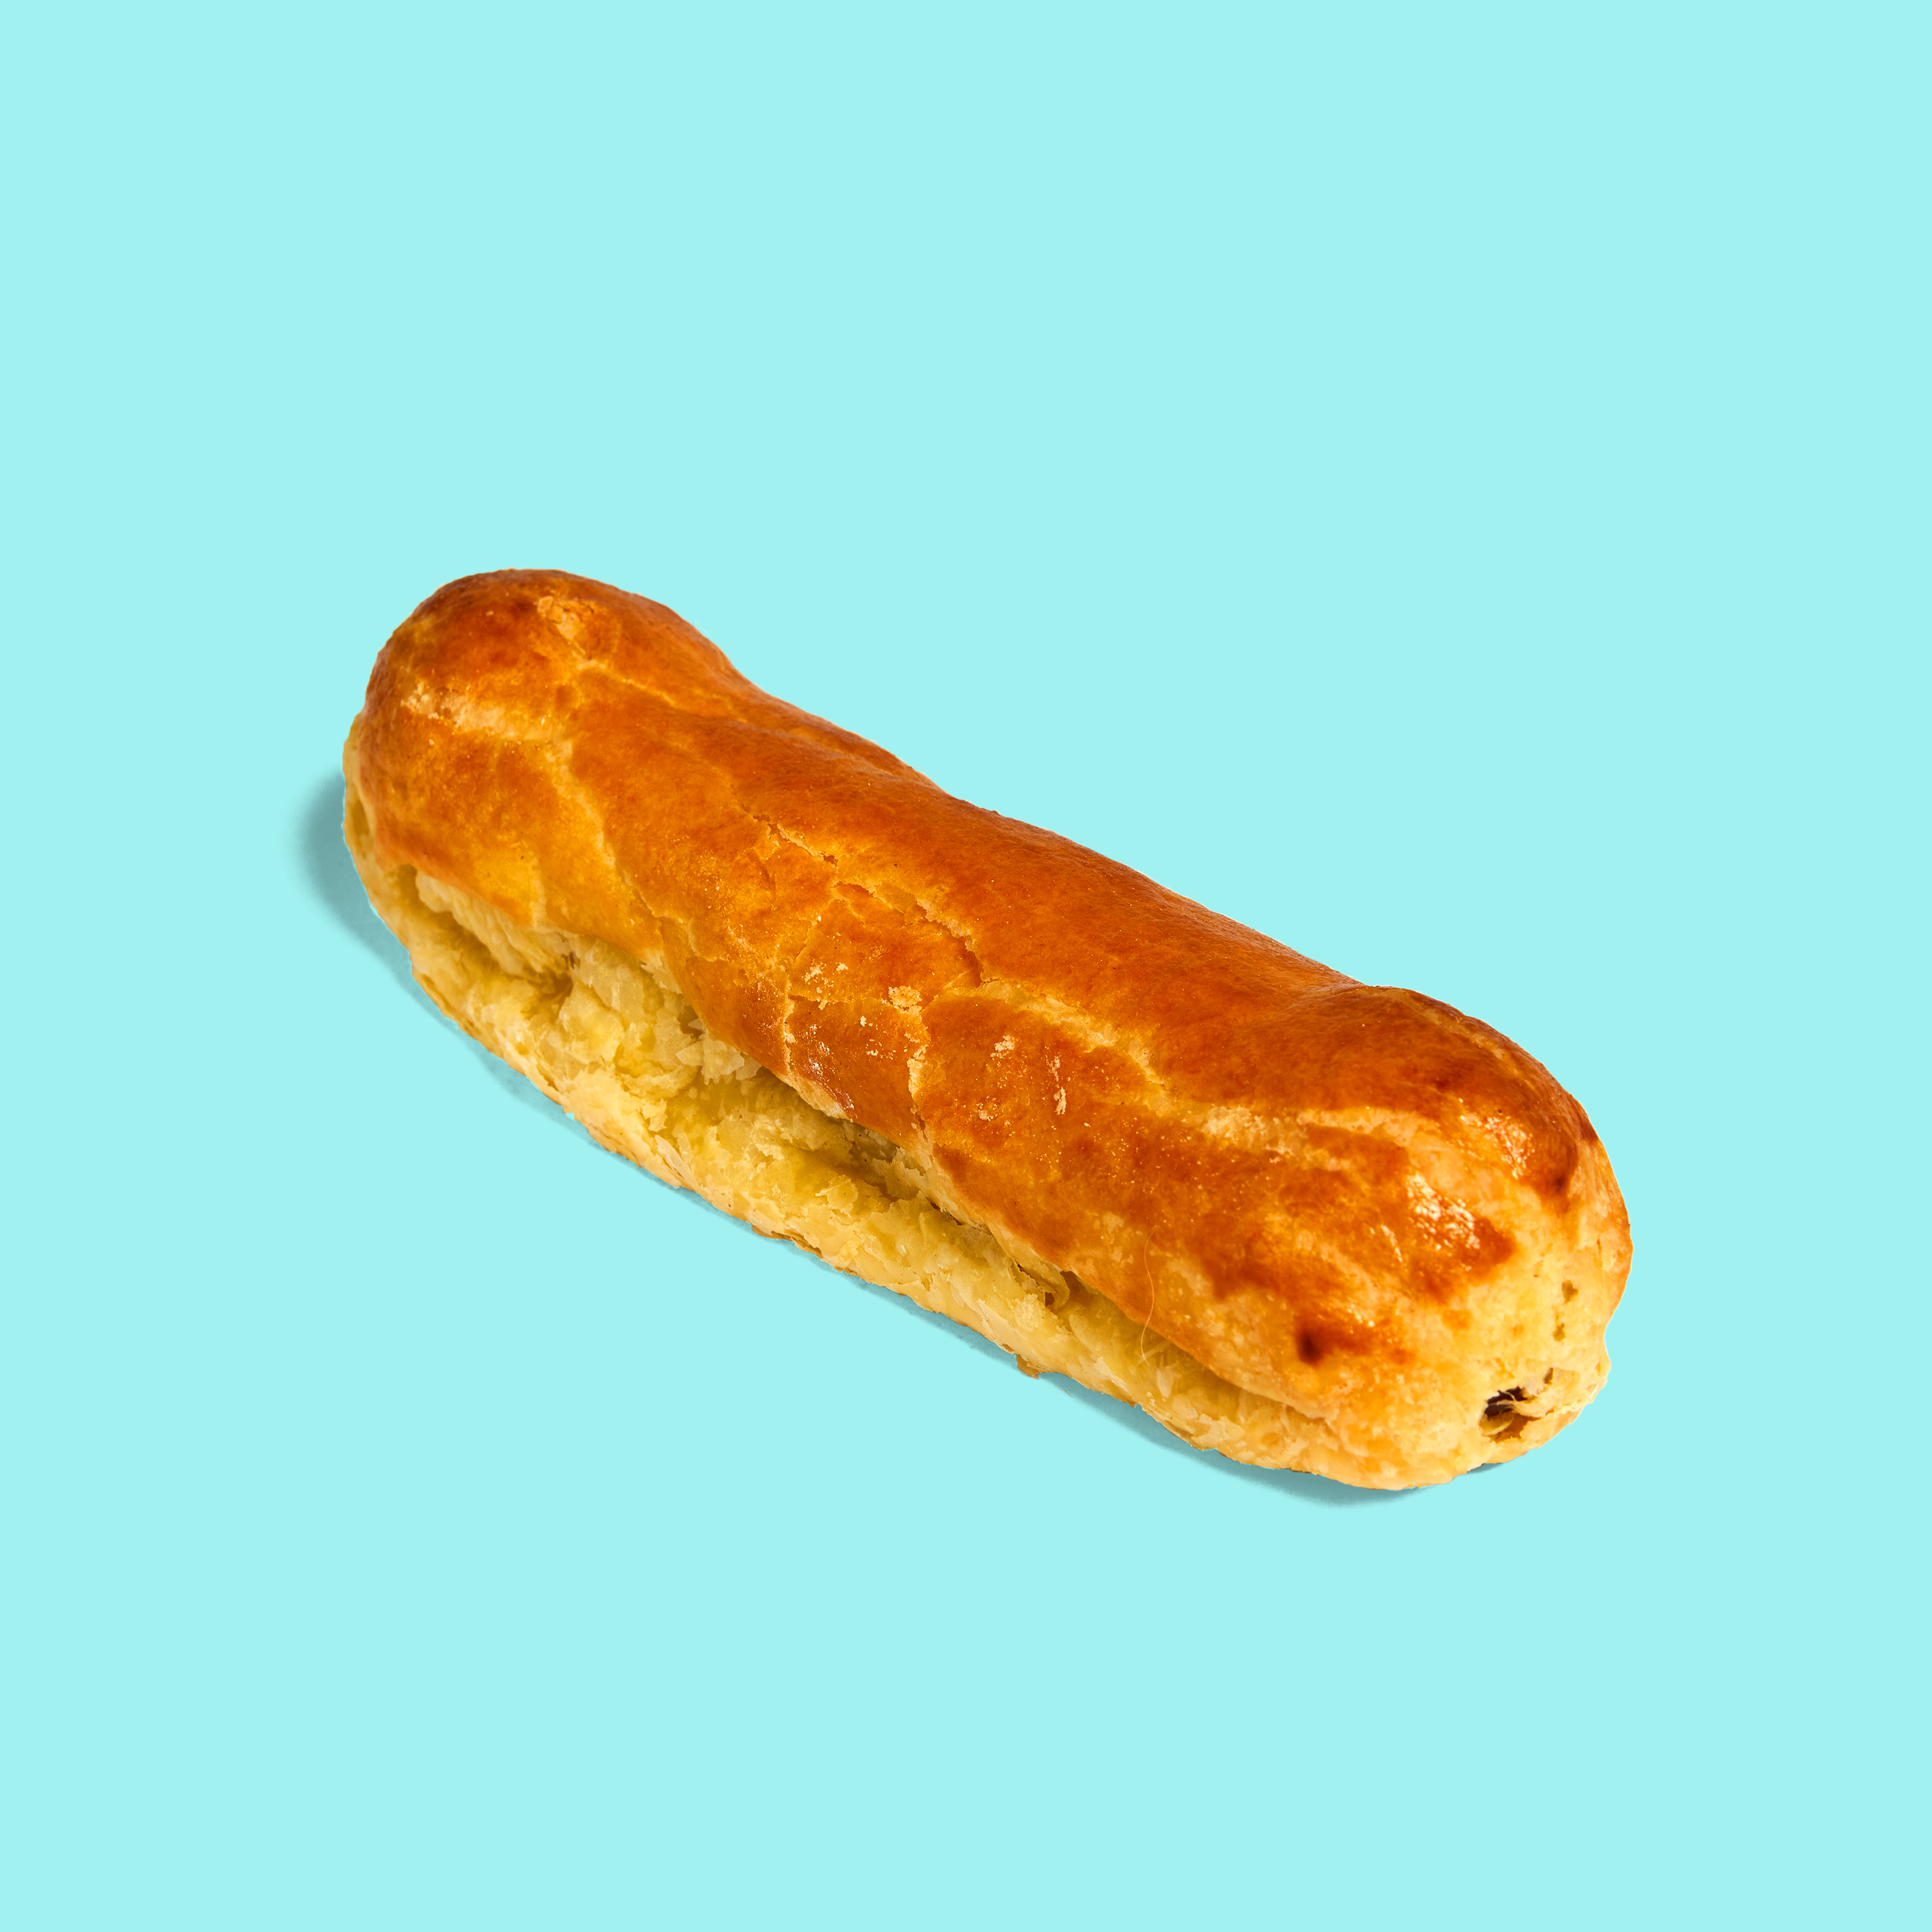 Pastel salado relleno de un hot dog con una pizca de mostaza, que le da un sabor exquisito.
